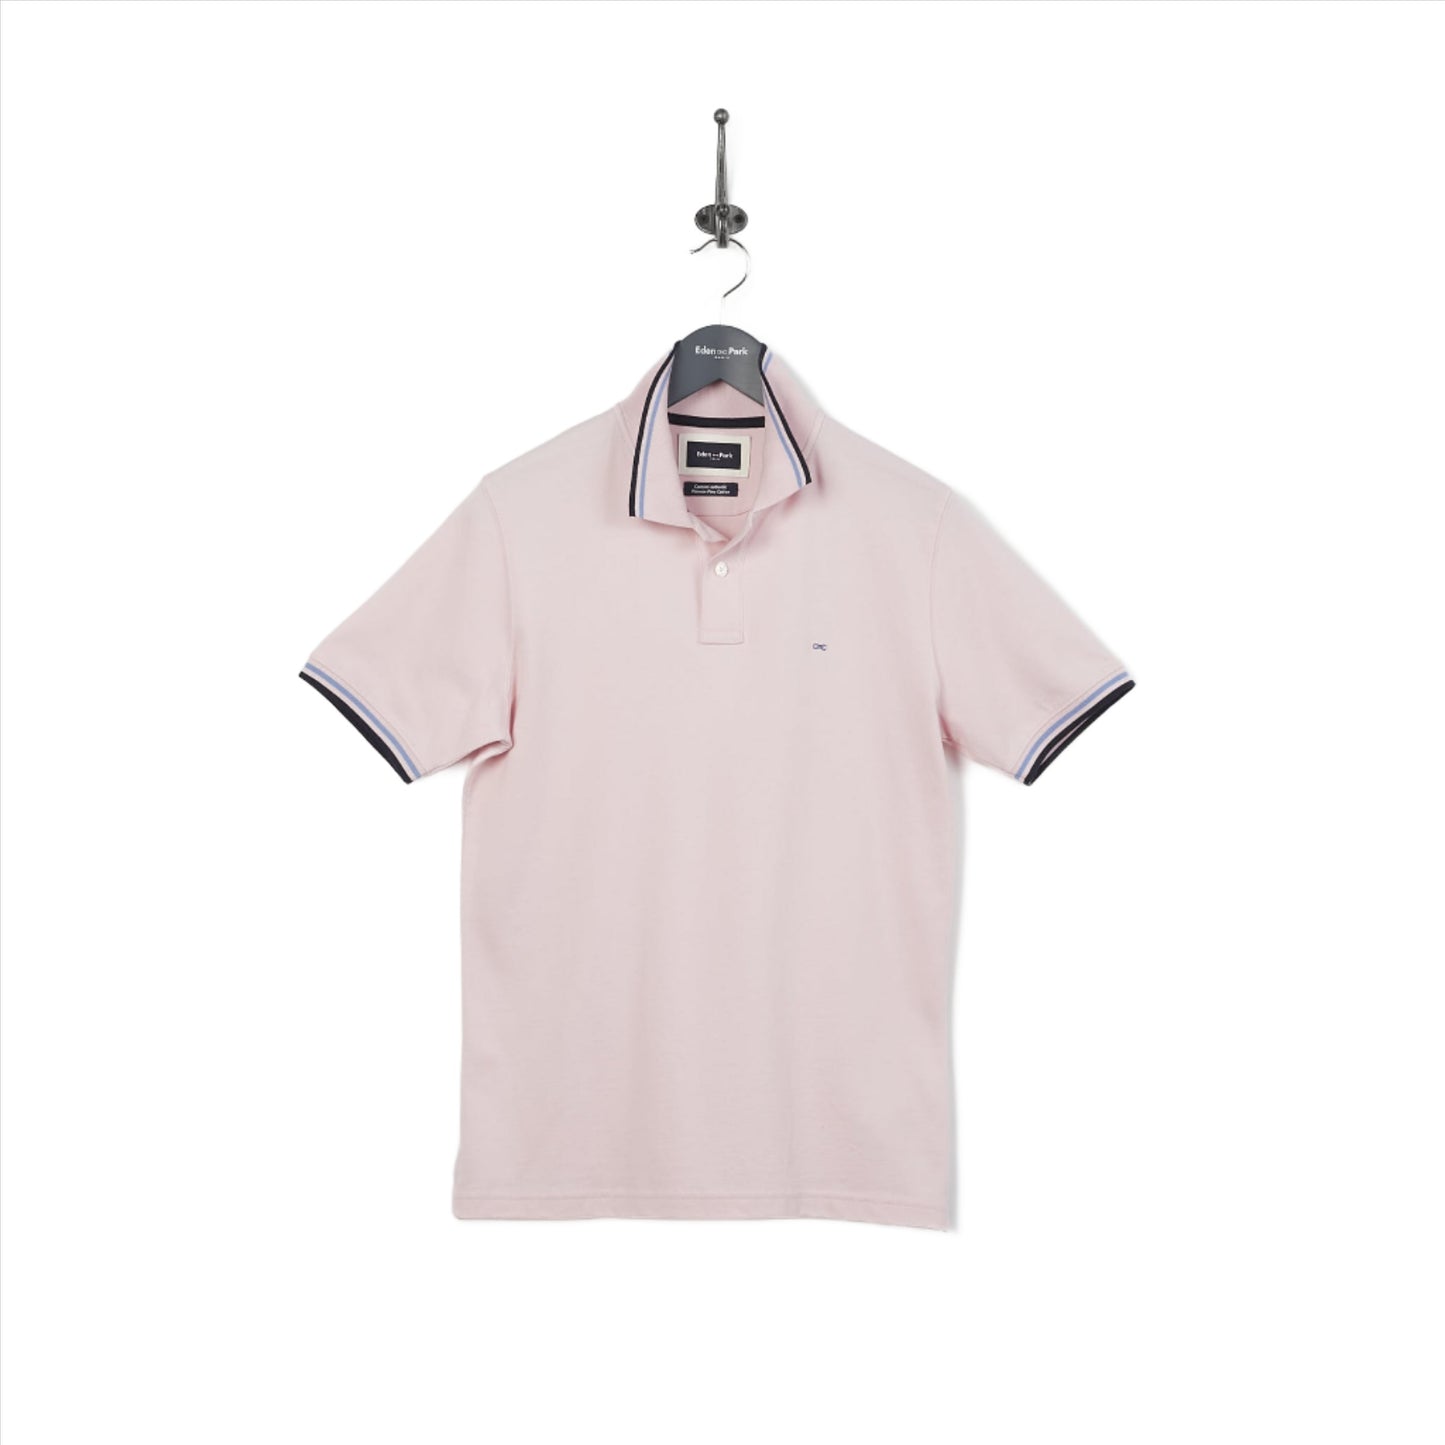 Eden Park Polo Shirt in Pima Cotton